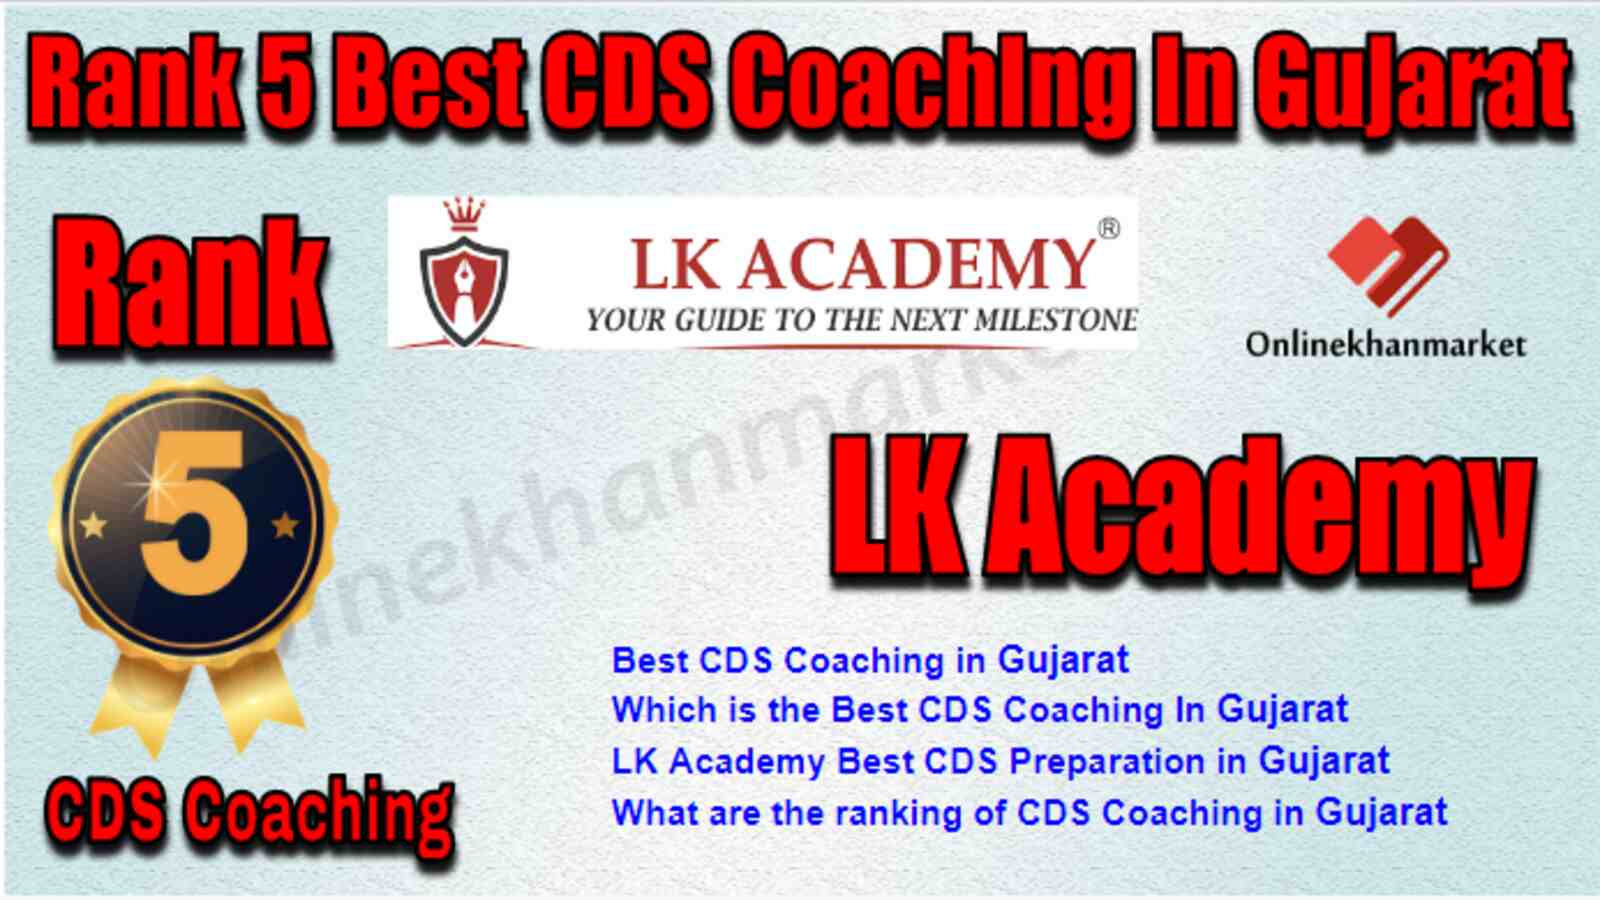 Rank 5 Best CDS Coaching in Gujarat